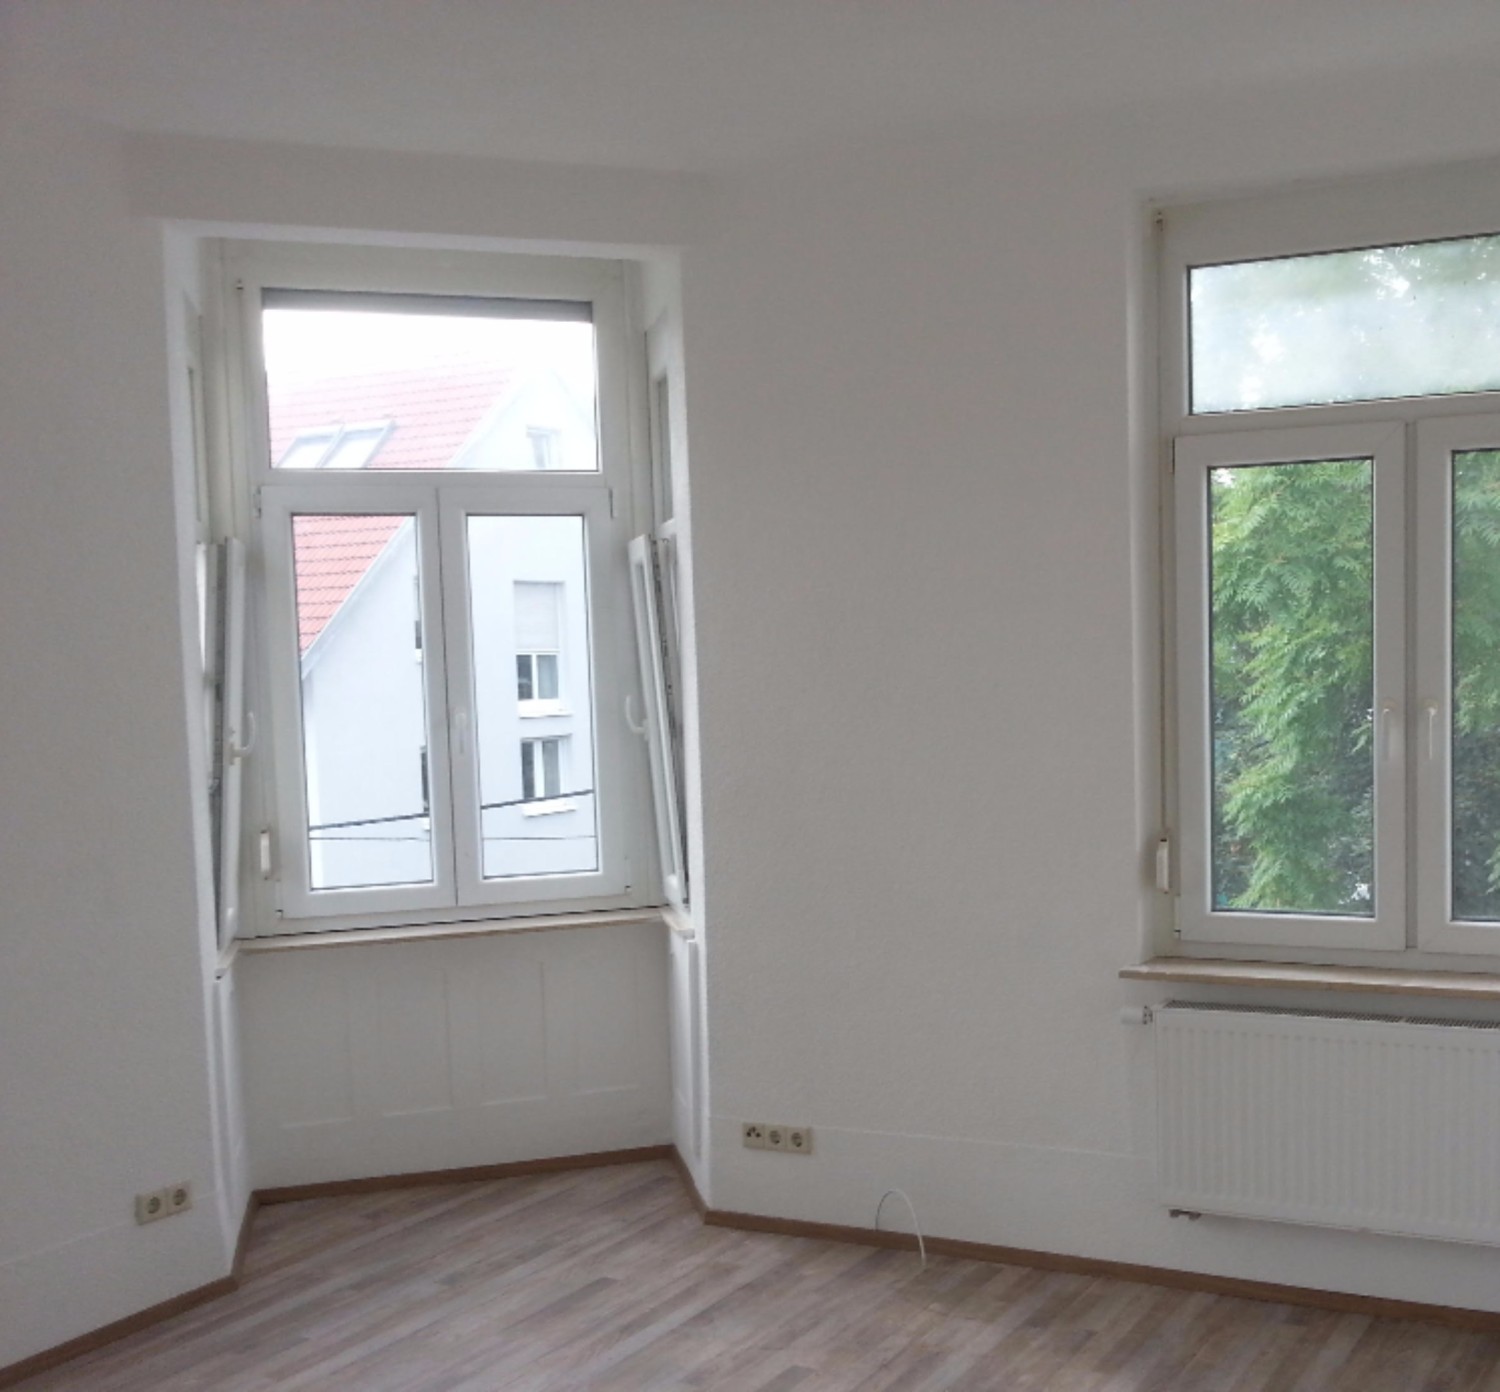 Frisch sanierte, helle 3 Zimmer 75 qm Wohnung in Stuttgart Feuerbach (Privat)